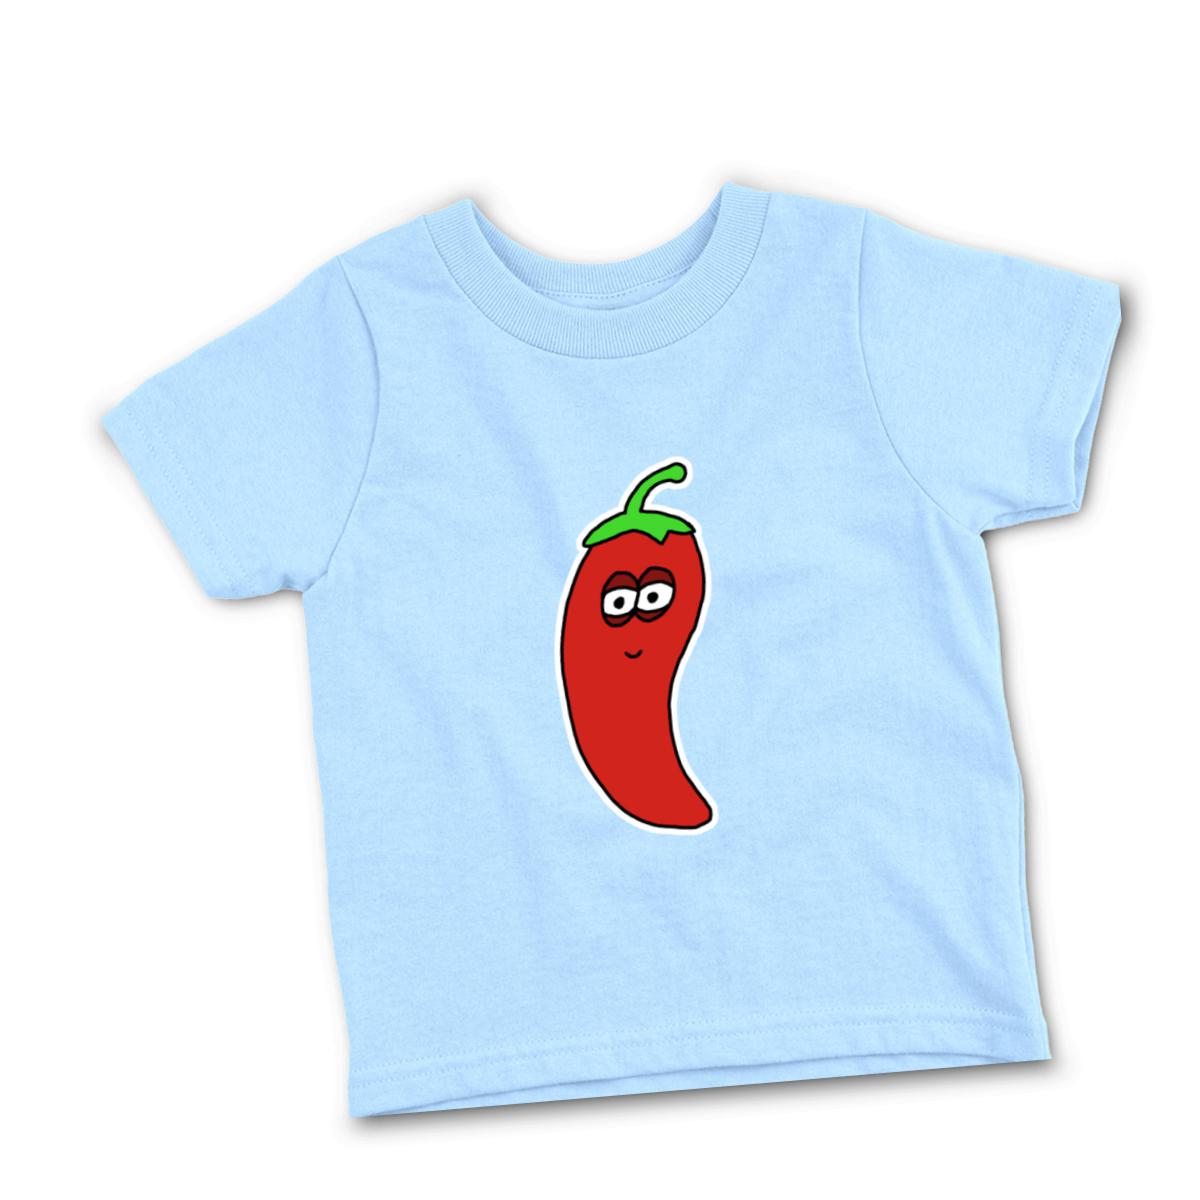 Chili Pepper Toddler Tee 2T light-blue